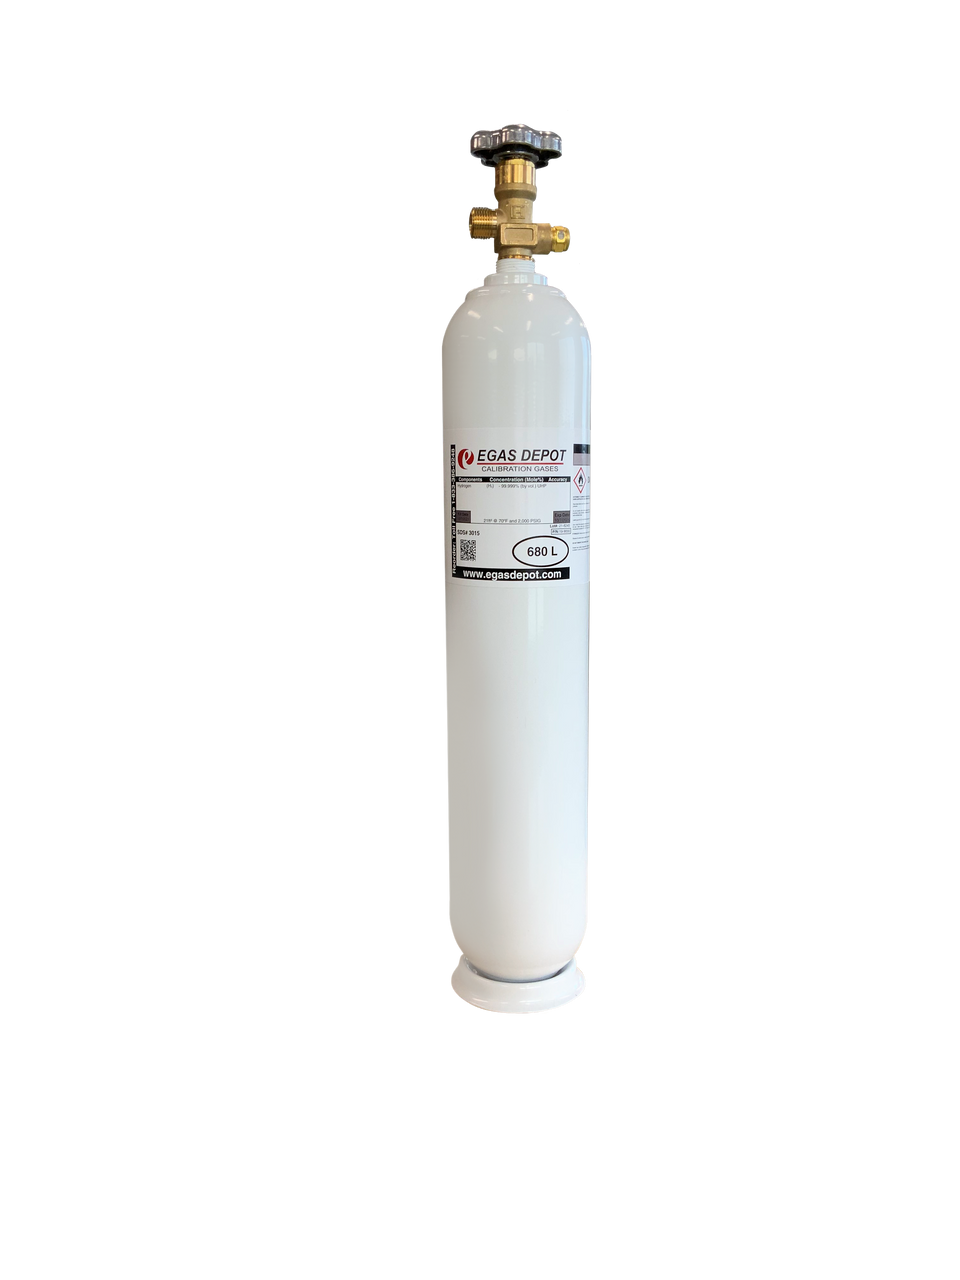 CH4 10,000 ppm/ Air 680 Liter calibration gas